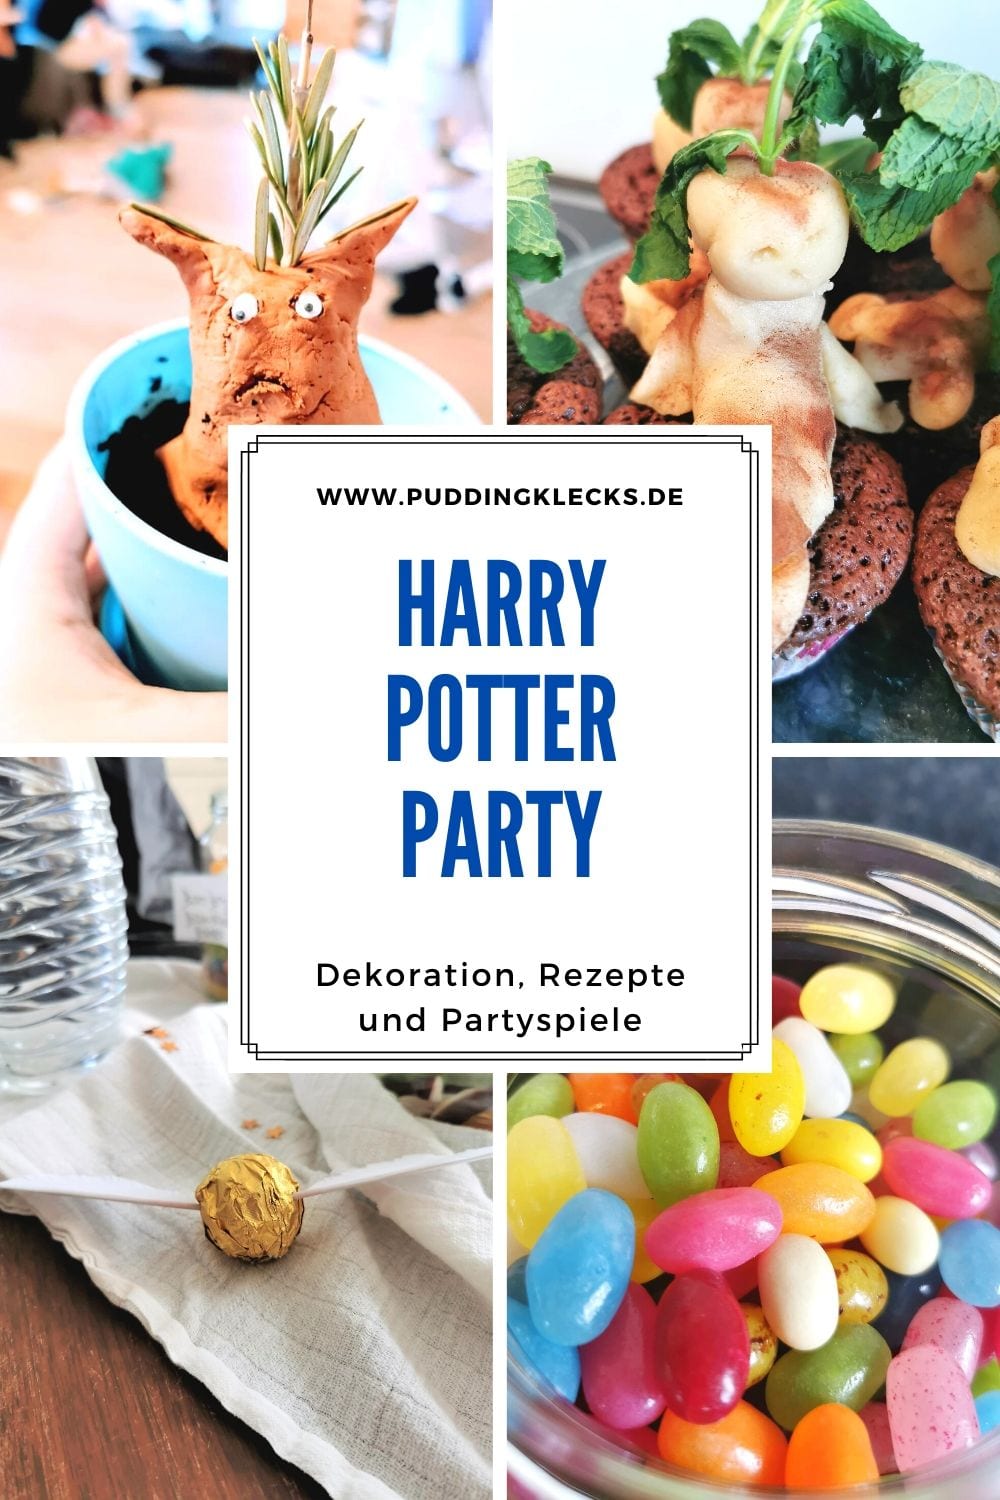 Du suchst nach Inspiration für eine bunte und möglichst einfache Harry Potter Party? Dann bist du hier genau richtig. Ich zeige dir auf Puddingklecks einfache DIY, Rezepte und Partyspiele für Hogwarts Fans